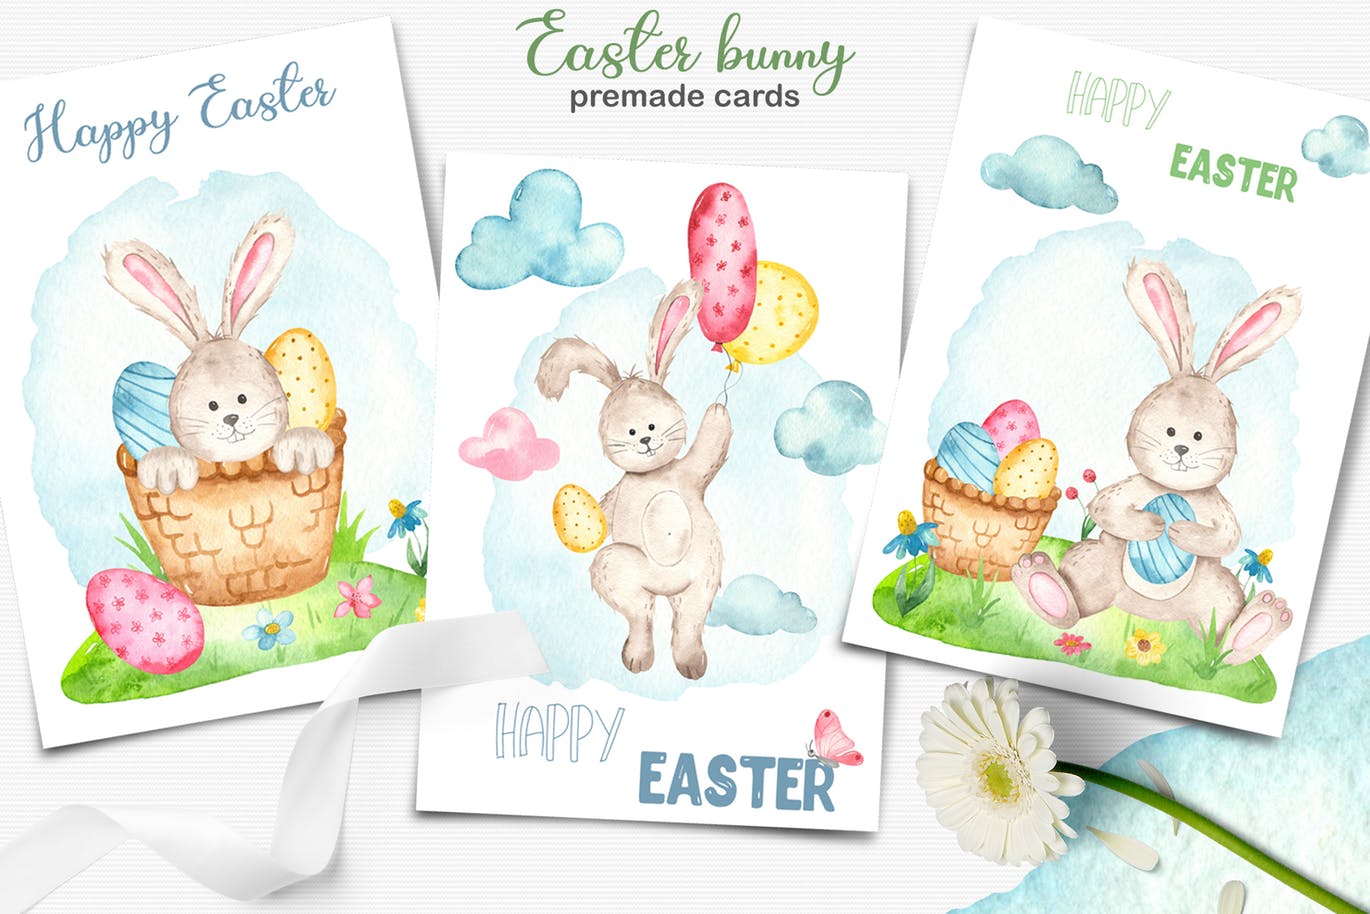 复活节兔子水彩手绘素材套装 Watercolor Easter Bunny collection插图(5)